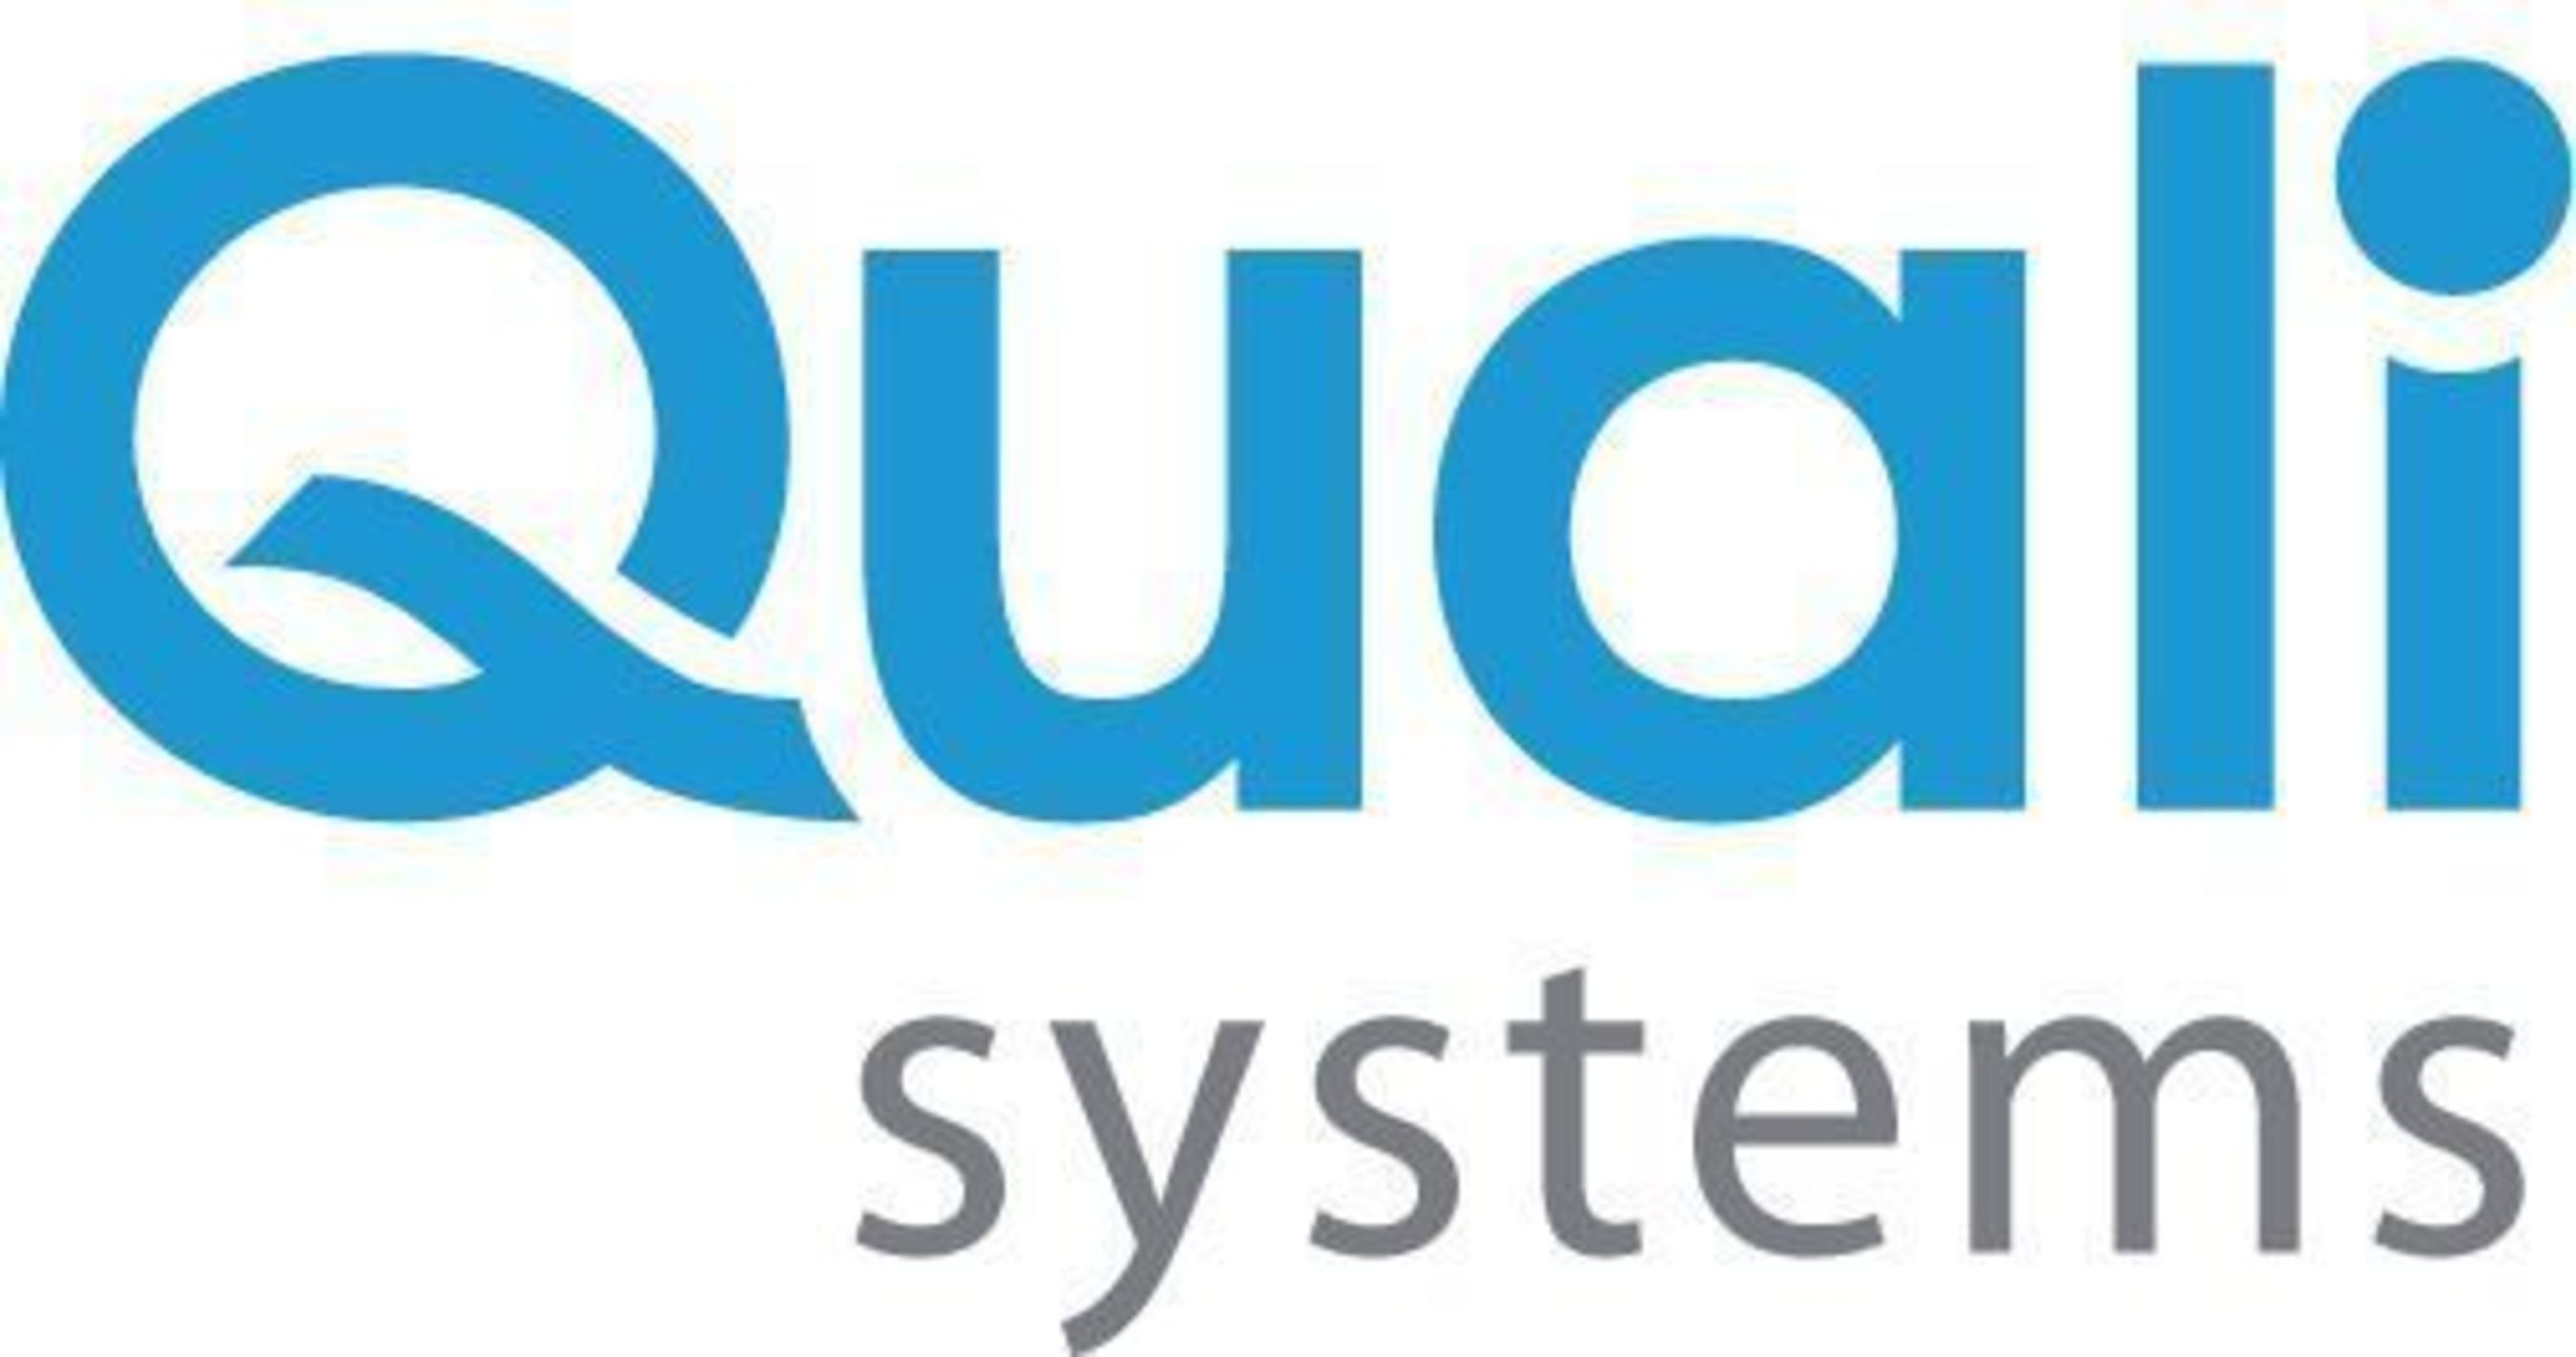 QualiSystems logo. (PRNewsFoto/QualiSystems)